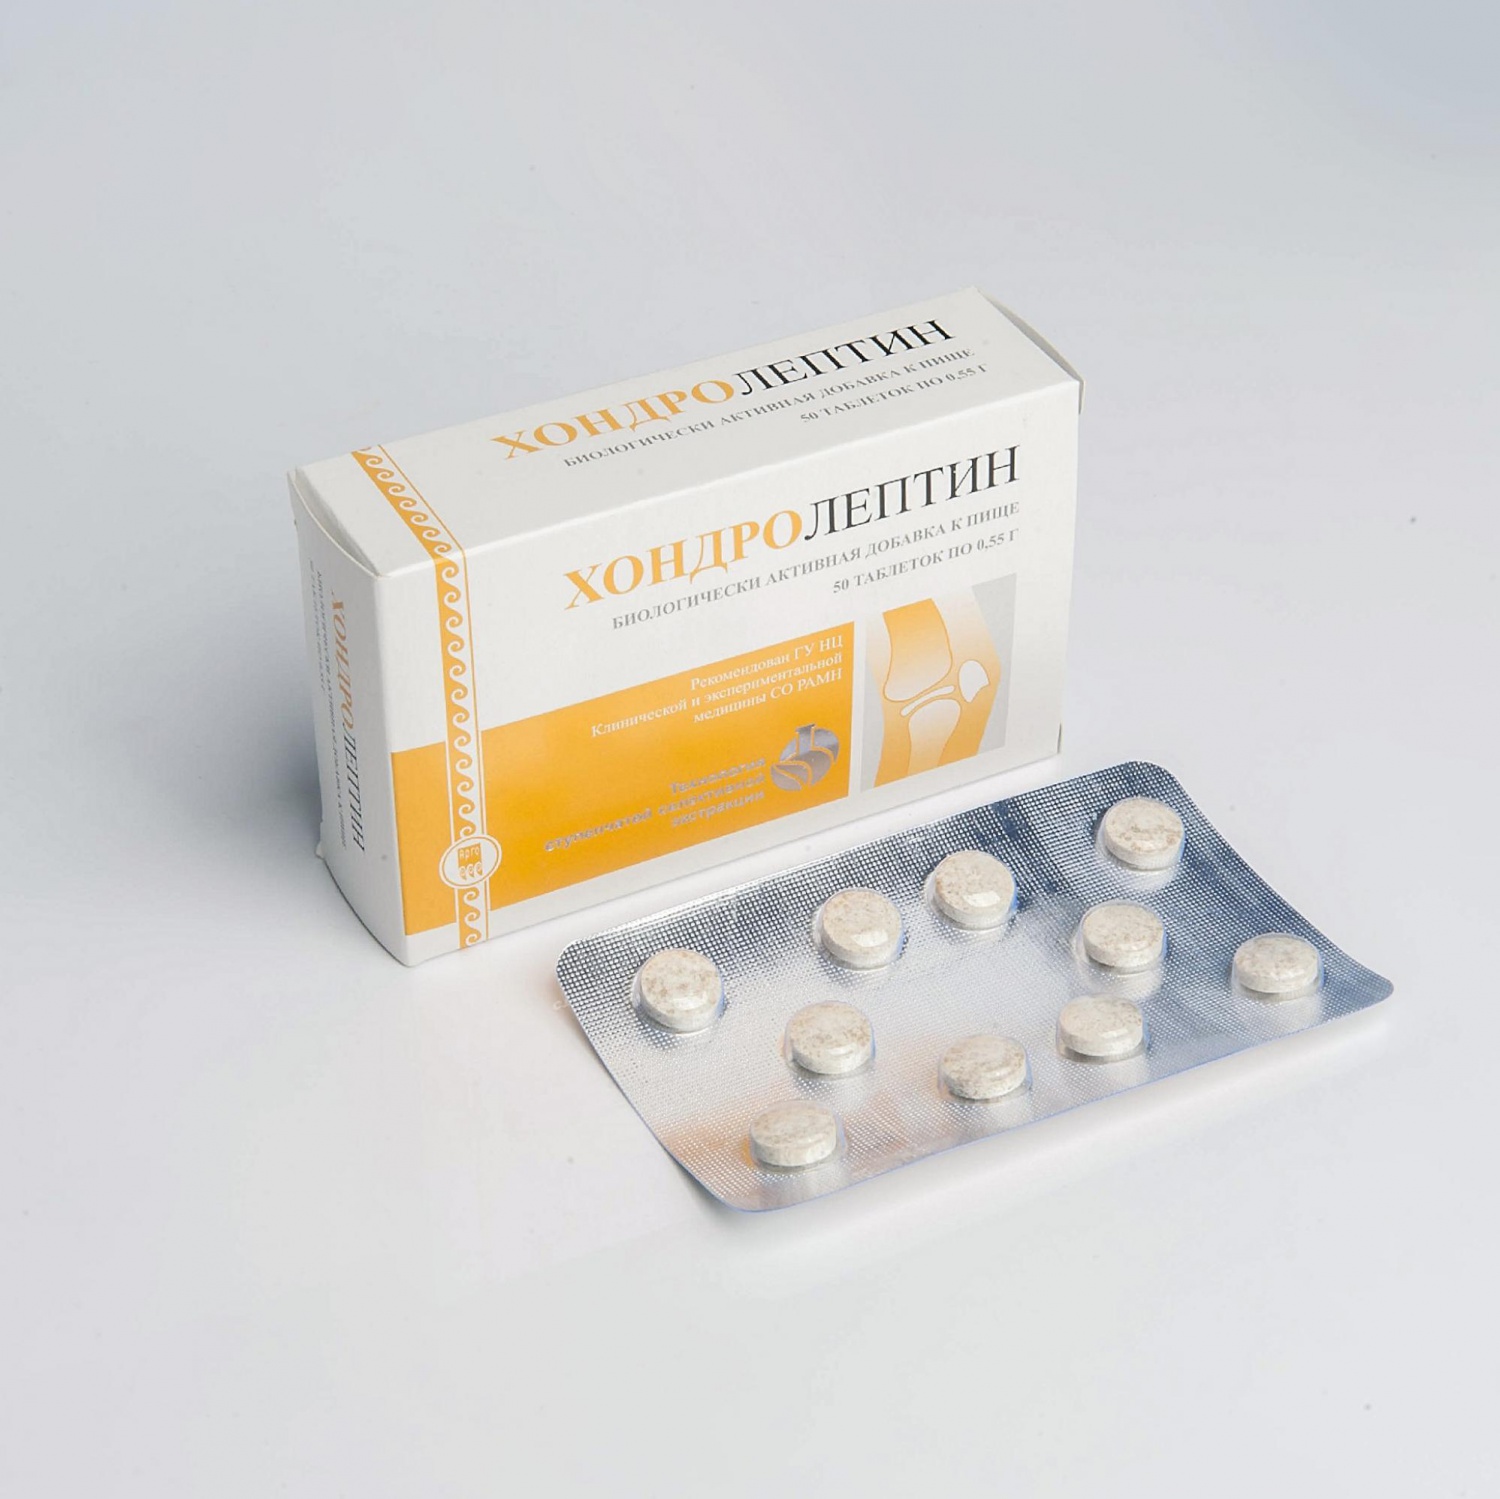 Хондролептин - препарат для улучшения функции опорно-двигательного .